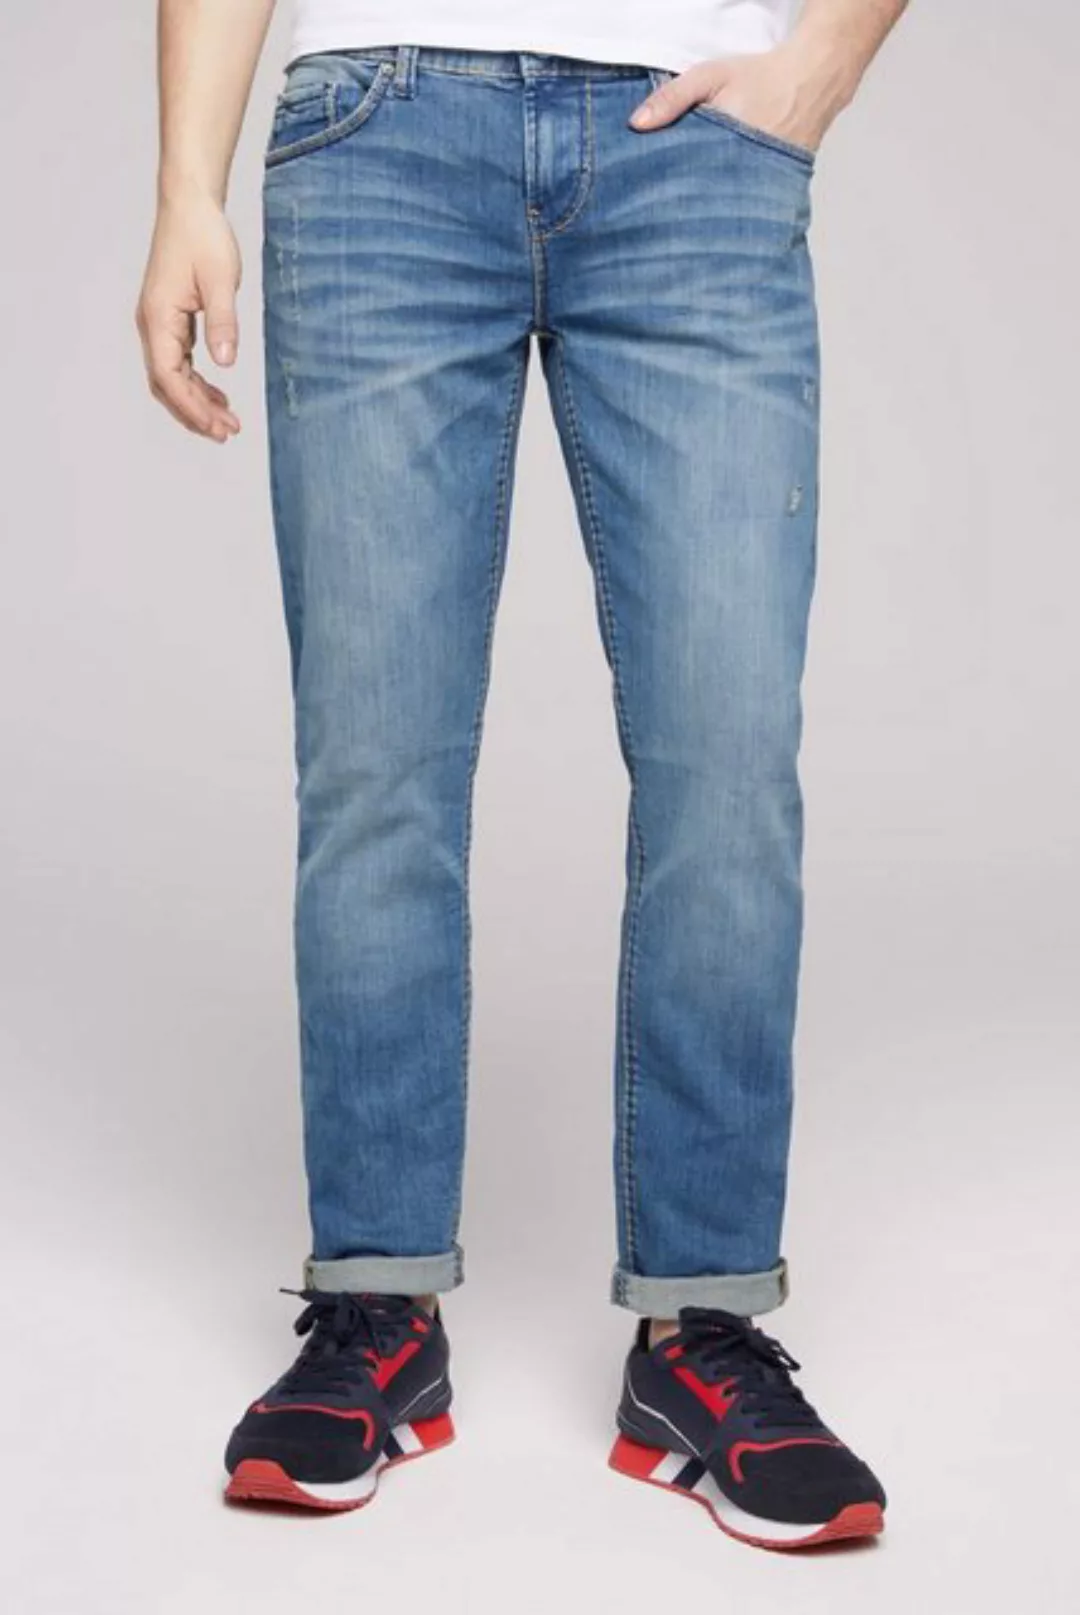 CAMP DAVID Regular-fit-Jeans mit niedriger Leibhöhe günstig online kaufen